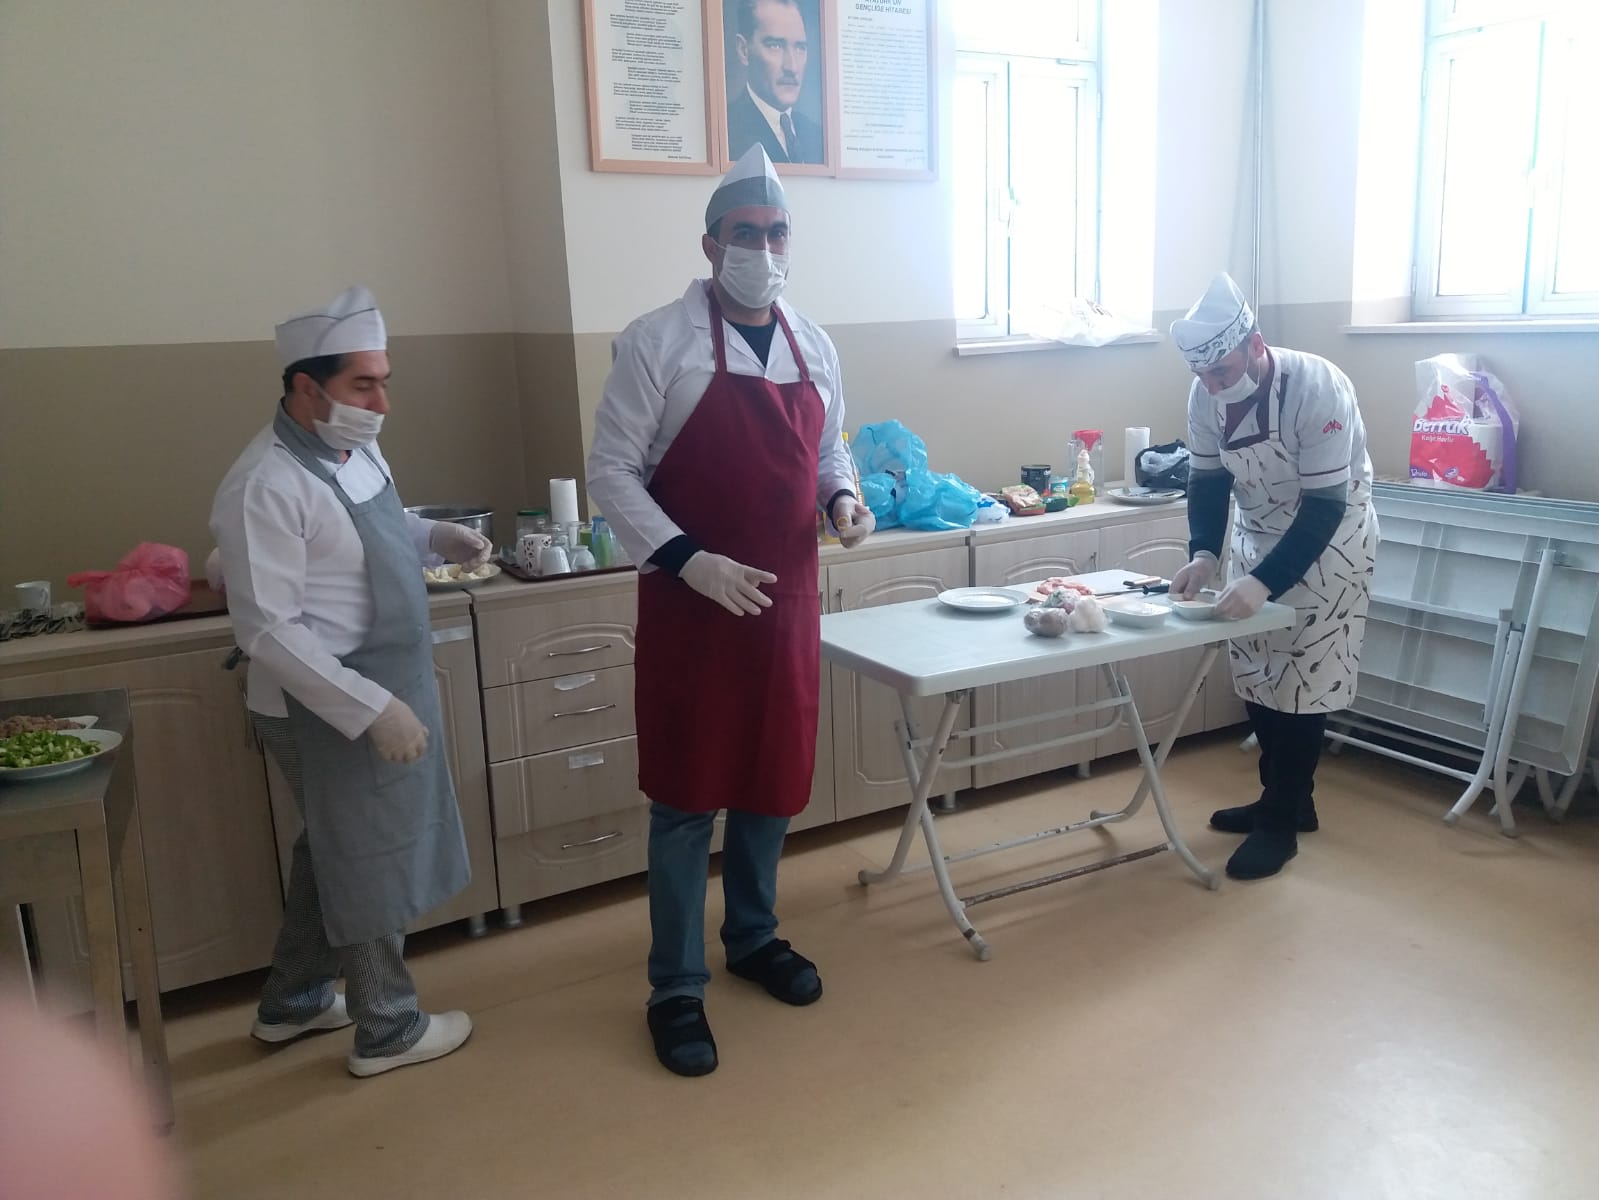 2019 Şubat Dönemi Kalfalık Ustalık sınavları kamere önünde yapıldı. Bitlis Mesleki Eğitim Merkezinde 2019 Şubat Dönemi Kalfalık Ustalık sınavları yapıldı.
